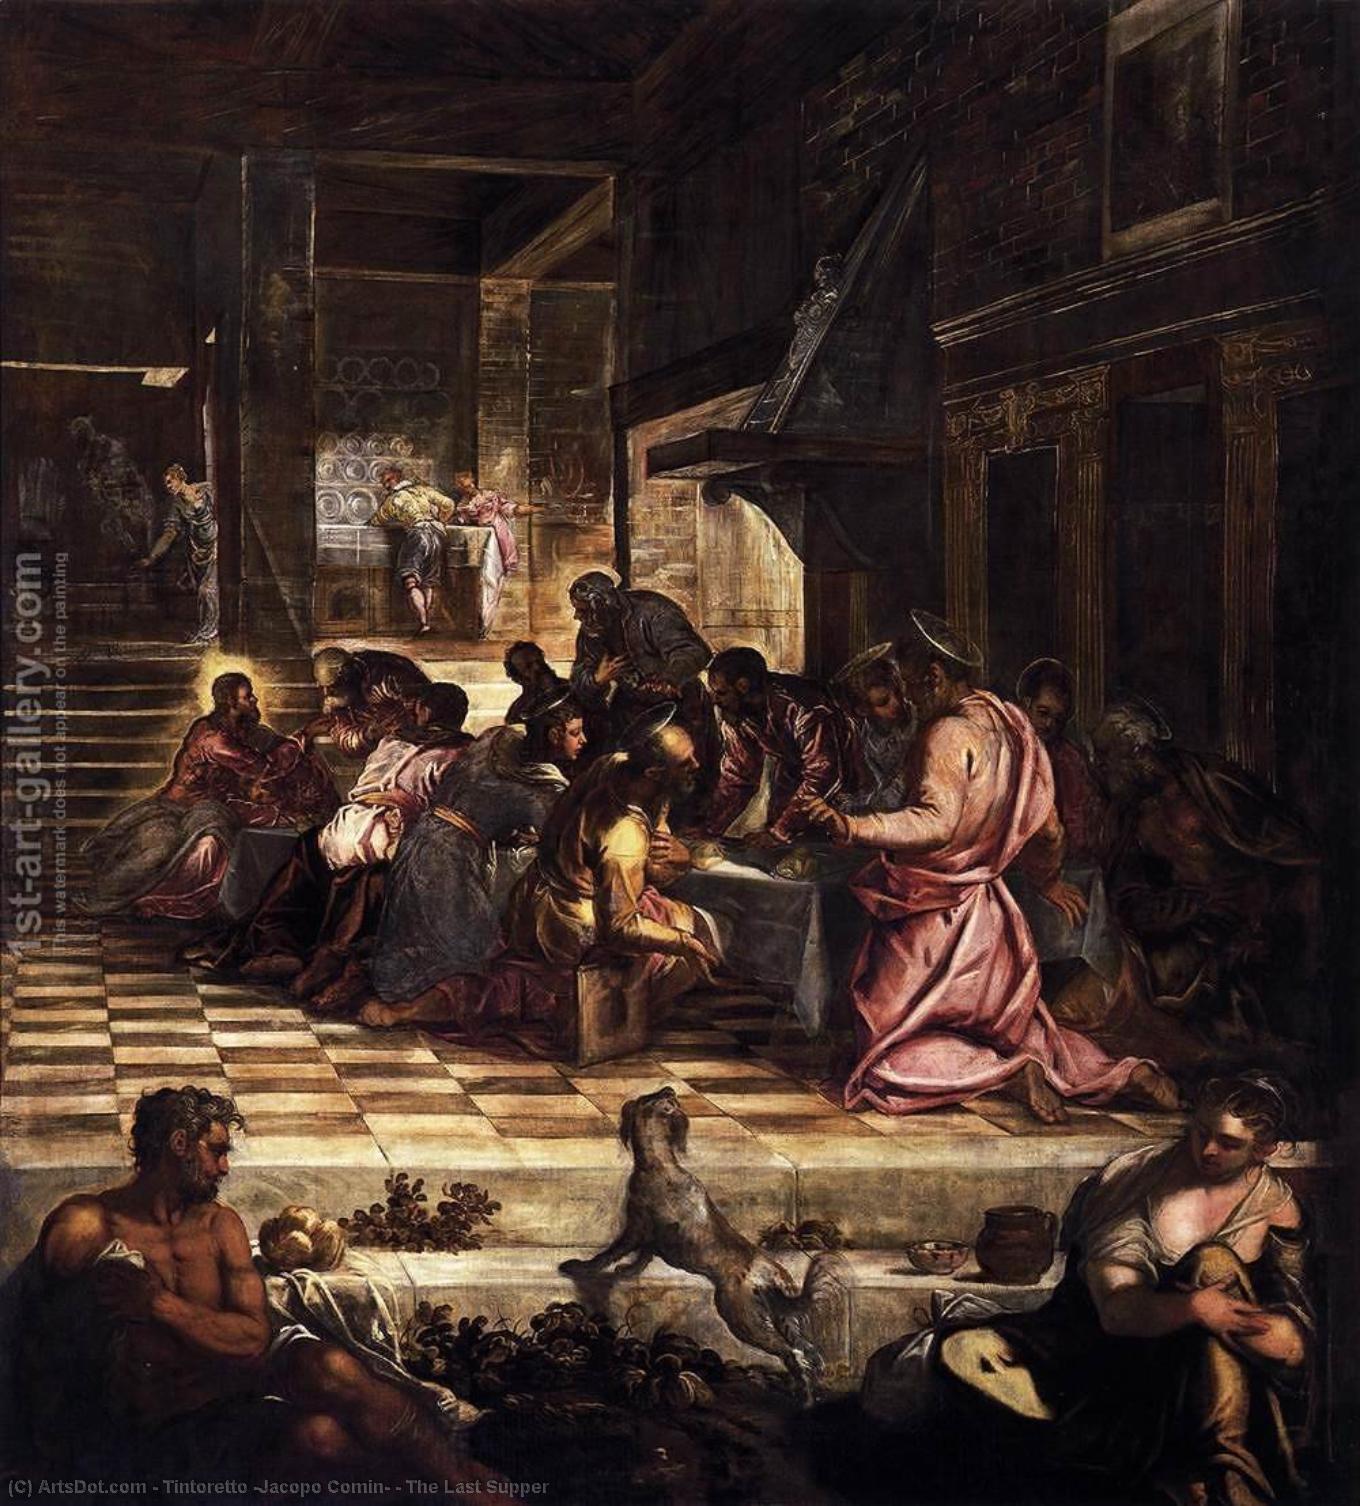 WikiOO.org - Encyclopedia of Fine Arts - Malba, Artwork Tintoretto (Jacopo Comin) - The Last Supper